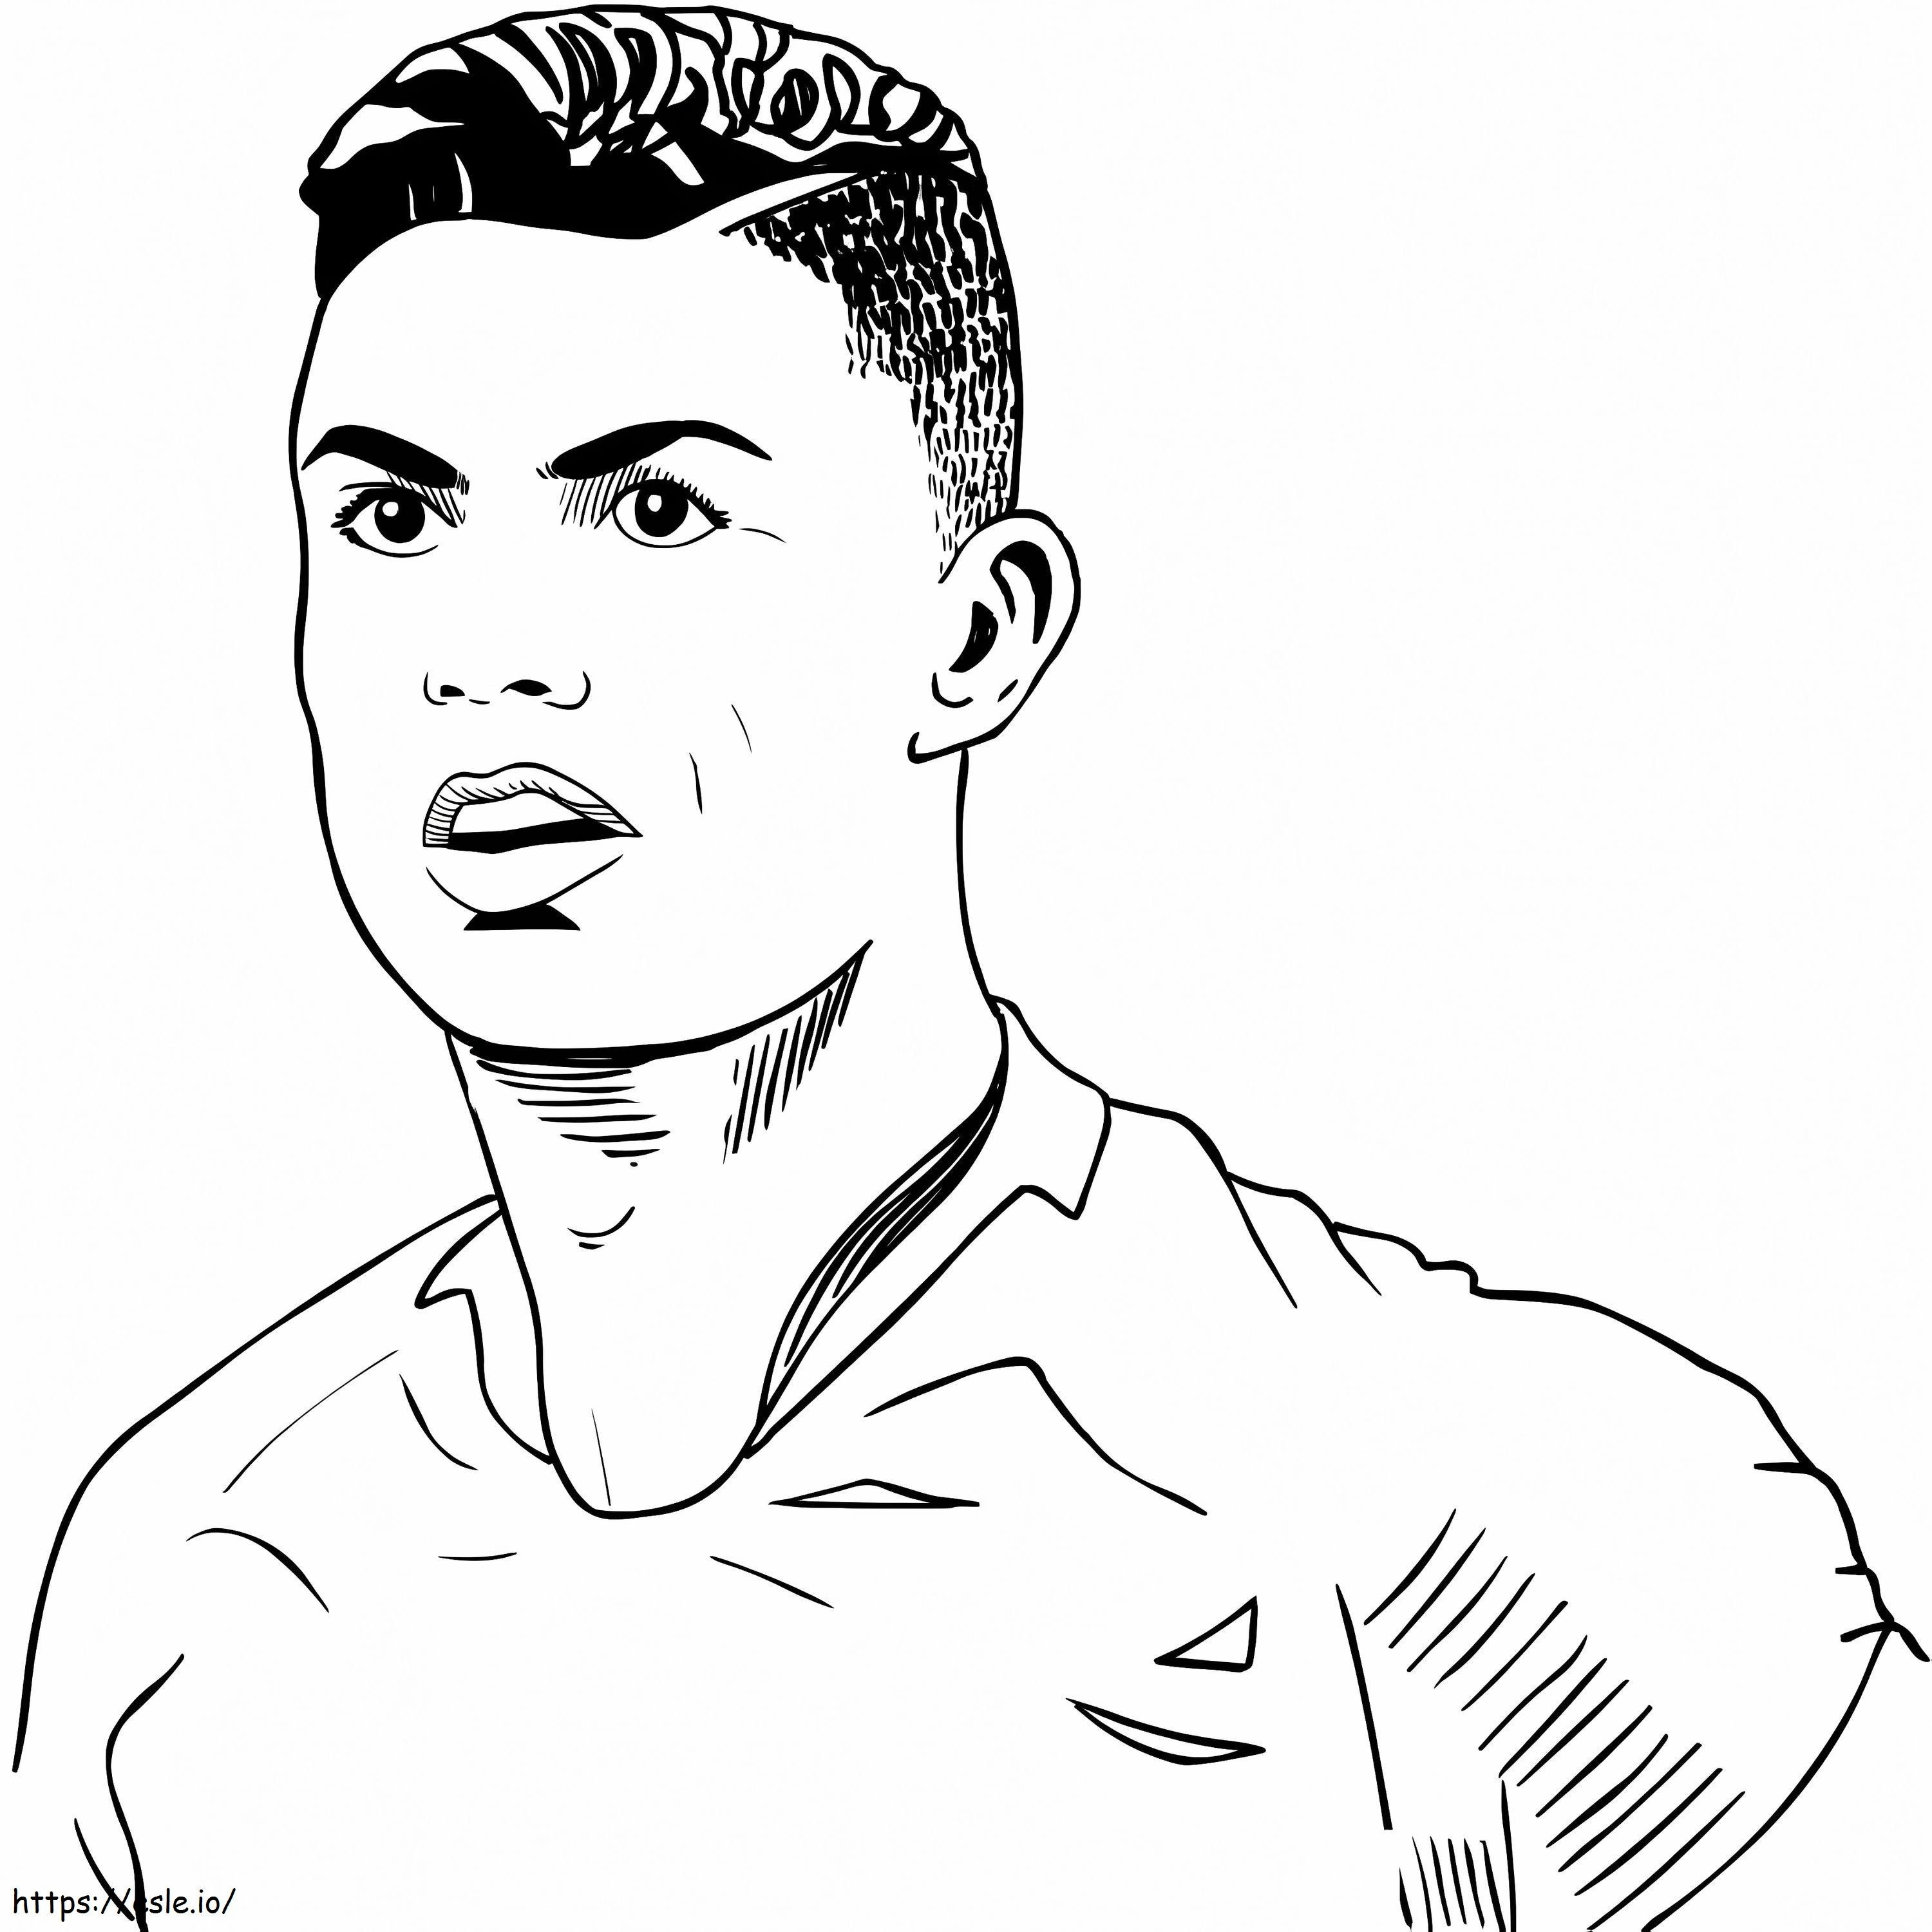 Pomo Cristiano Ronaldo värityskuva